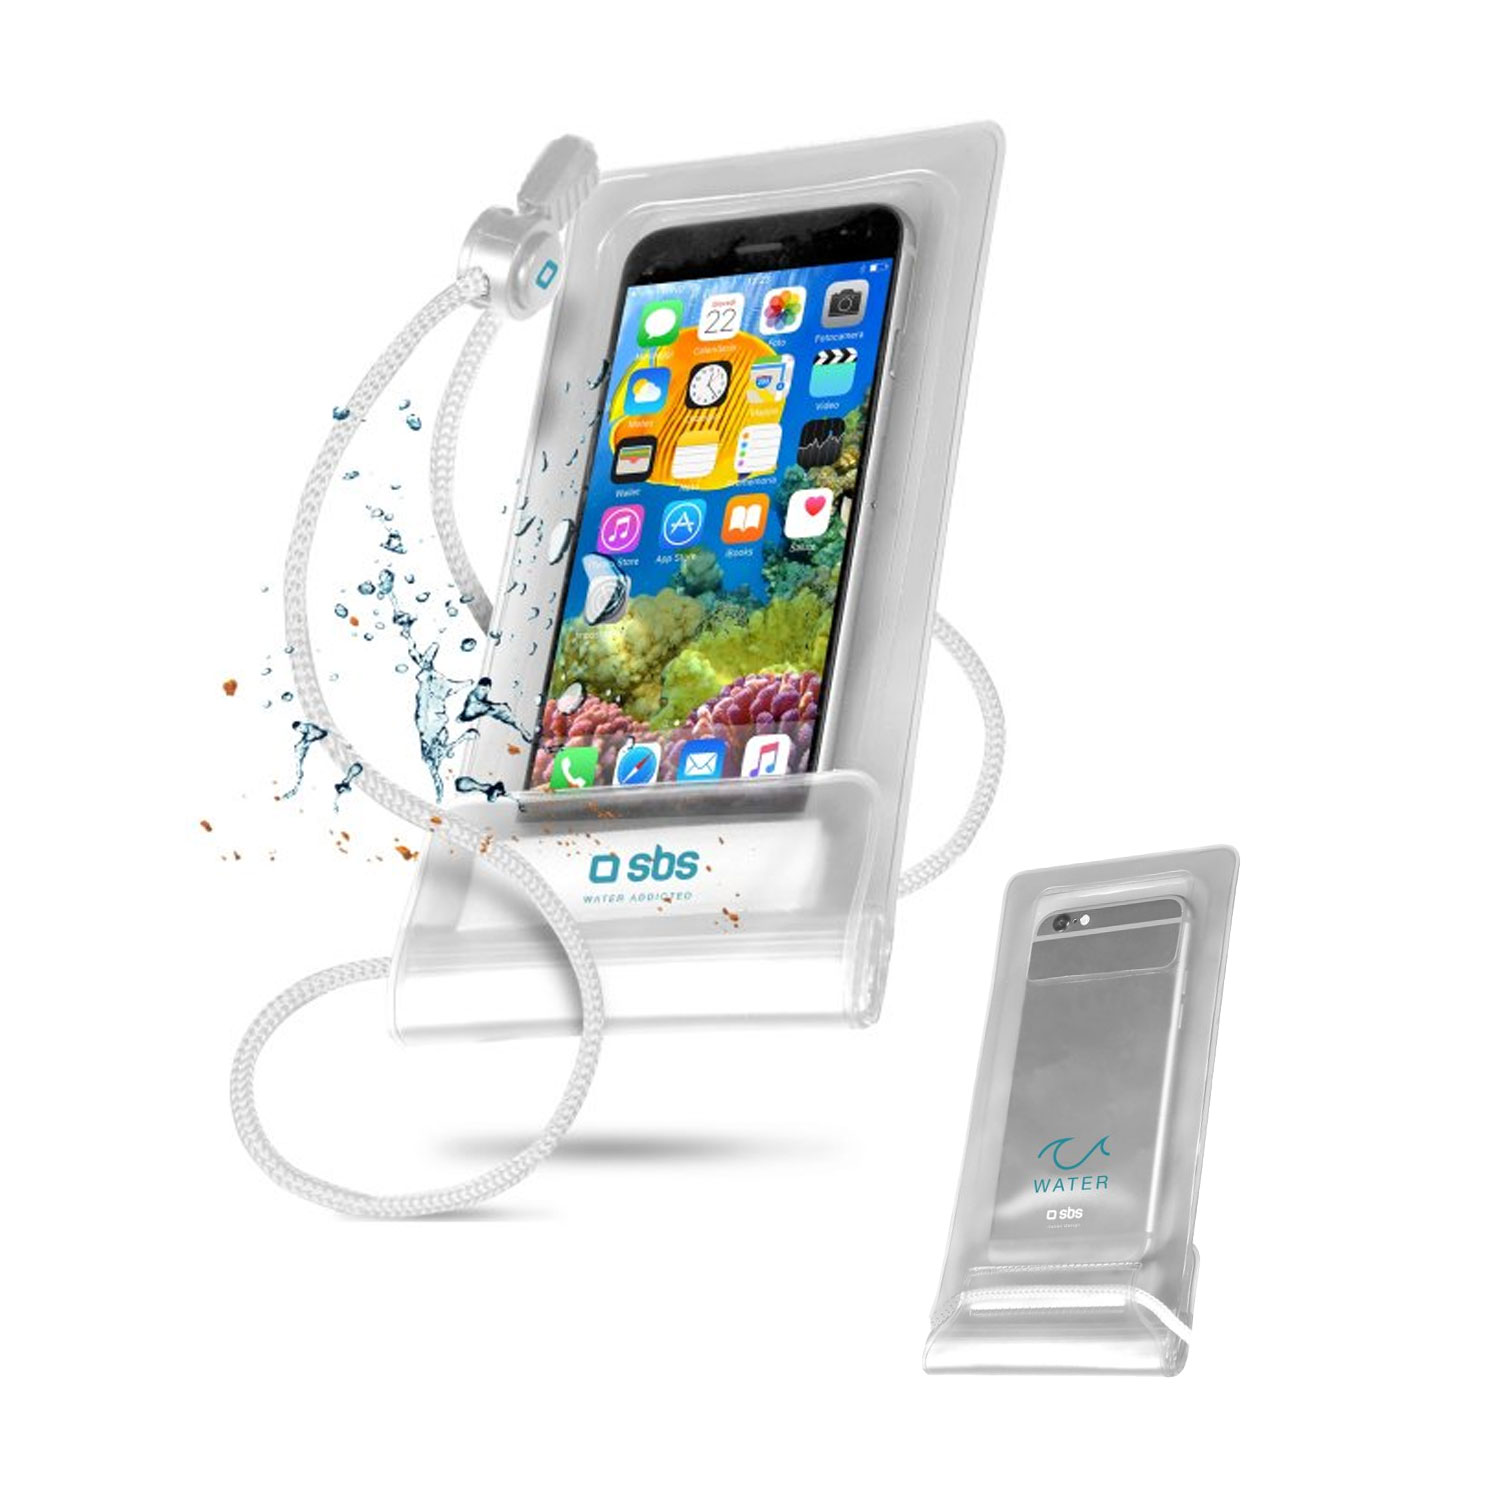 Wasserdichte Smartphone-Hülle bis 6,5 Zoll, transparent/ weiß inklusive Umhängeschnur